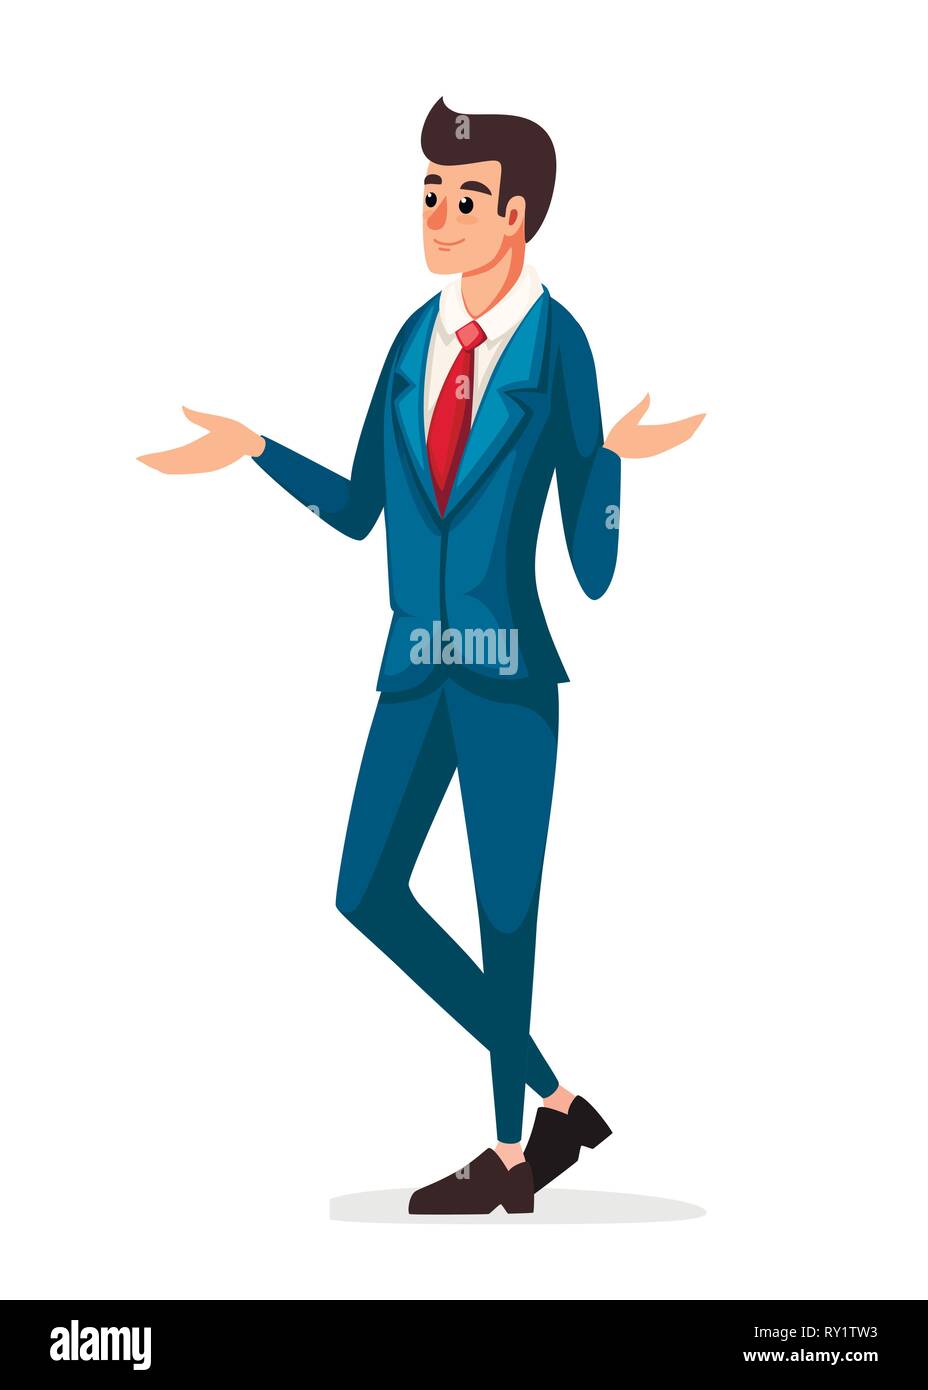 Businessman standing et surpris. Bleu classique costume avec cravate rouge. Télévision vector illustration isolé sur fond blanc. Cartoon character design Illustration de Vecteur